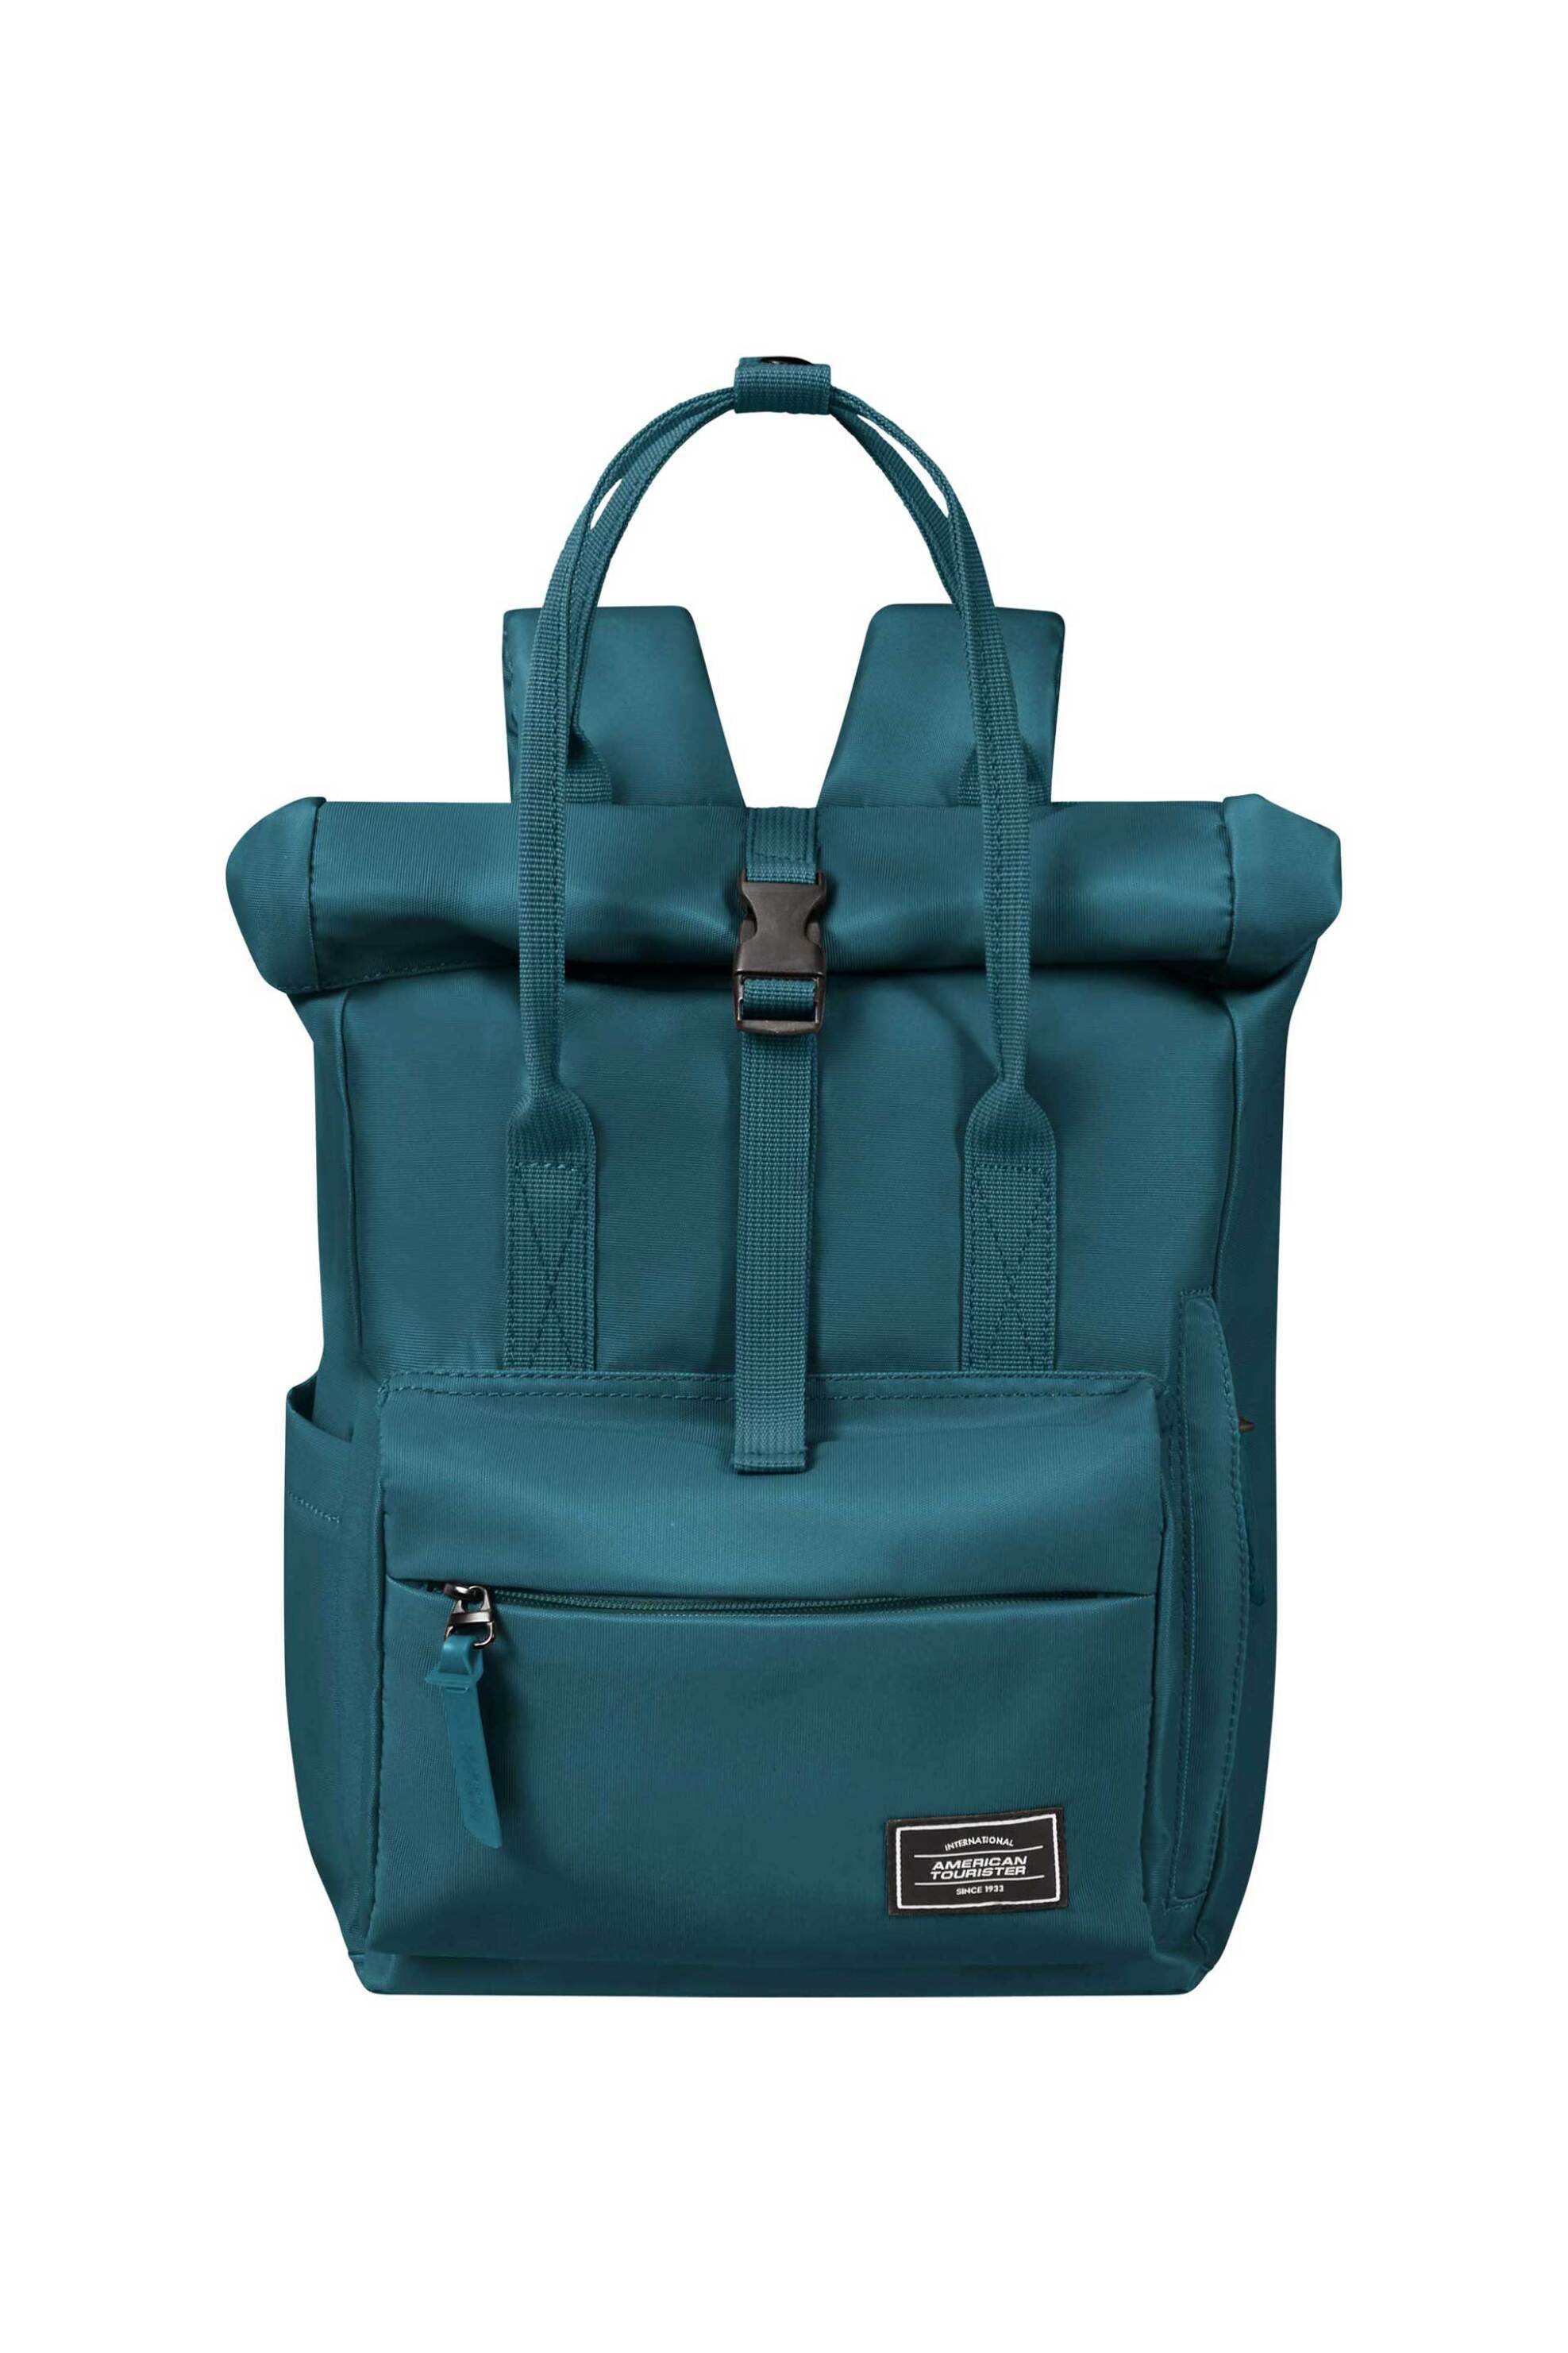 Ανδρική Μόδα > Ανδρικές Τσάντες > Ανδρικά Σακίδια & Backpacks American Tourister unisex backpack μονόχρωμο με πολλαπλές θήκες "Urban Groove" 36 x 25 x 20 cm - 143779SM Πετρόλ